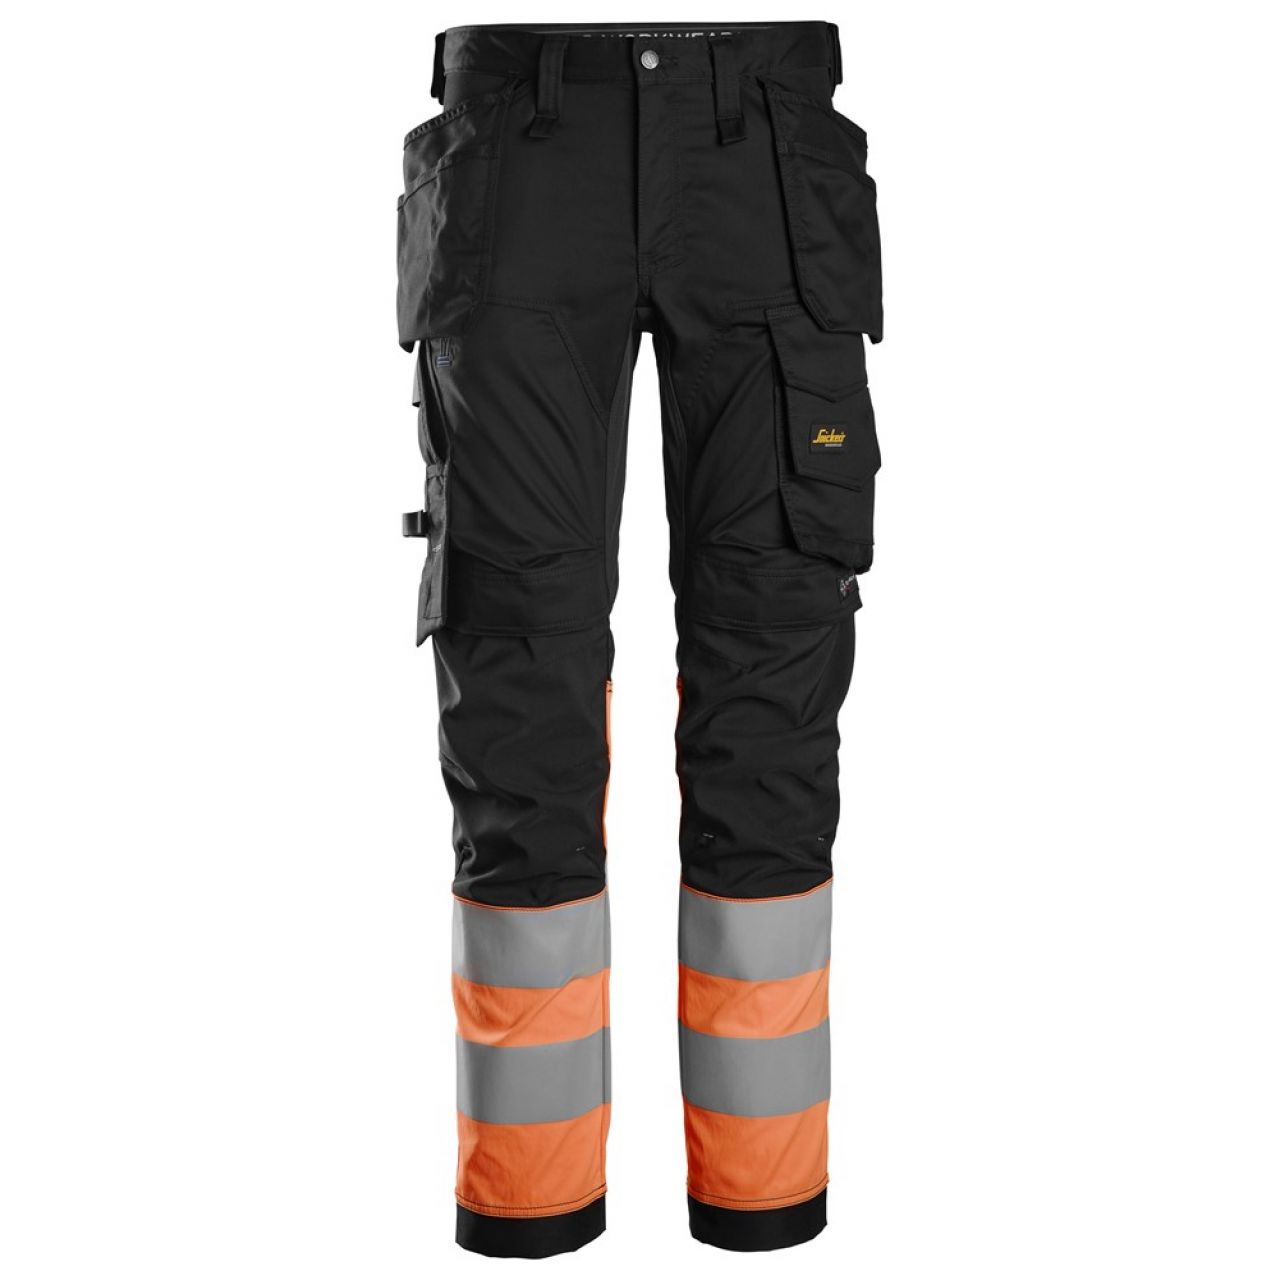 6234 Pantalones largos de trabajo elásticos de alta visibilidad clase 1 con bolsillos flotantes negro-naranja talla 64